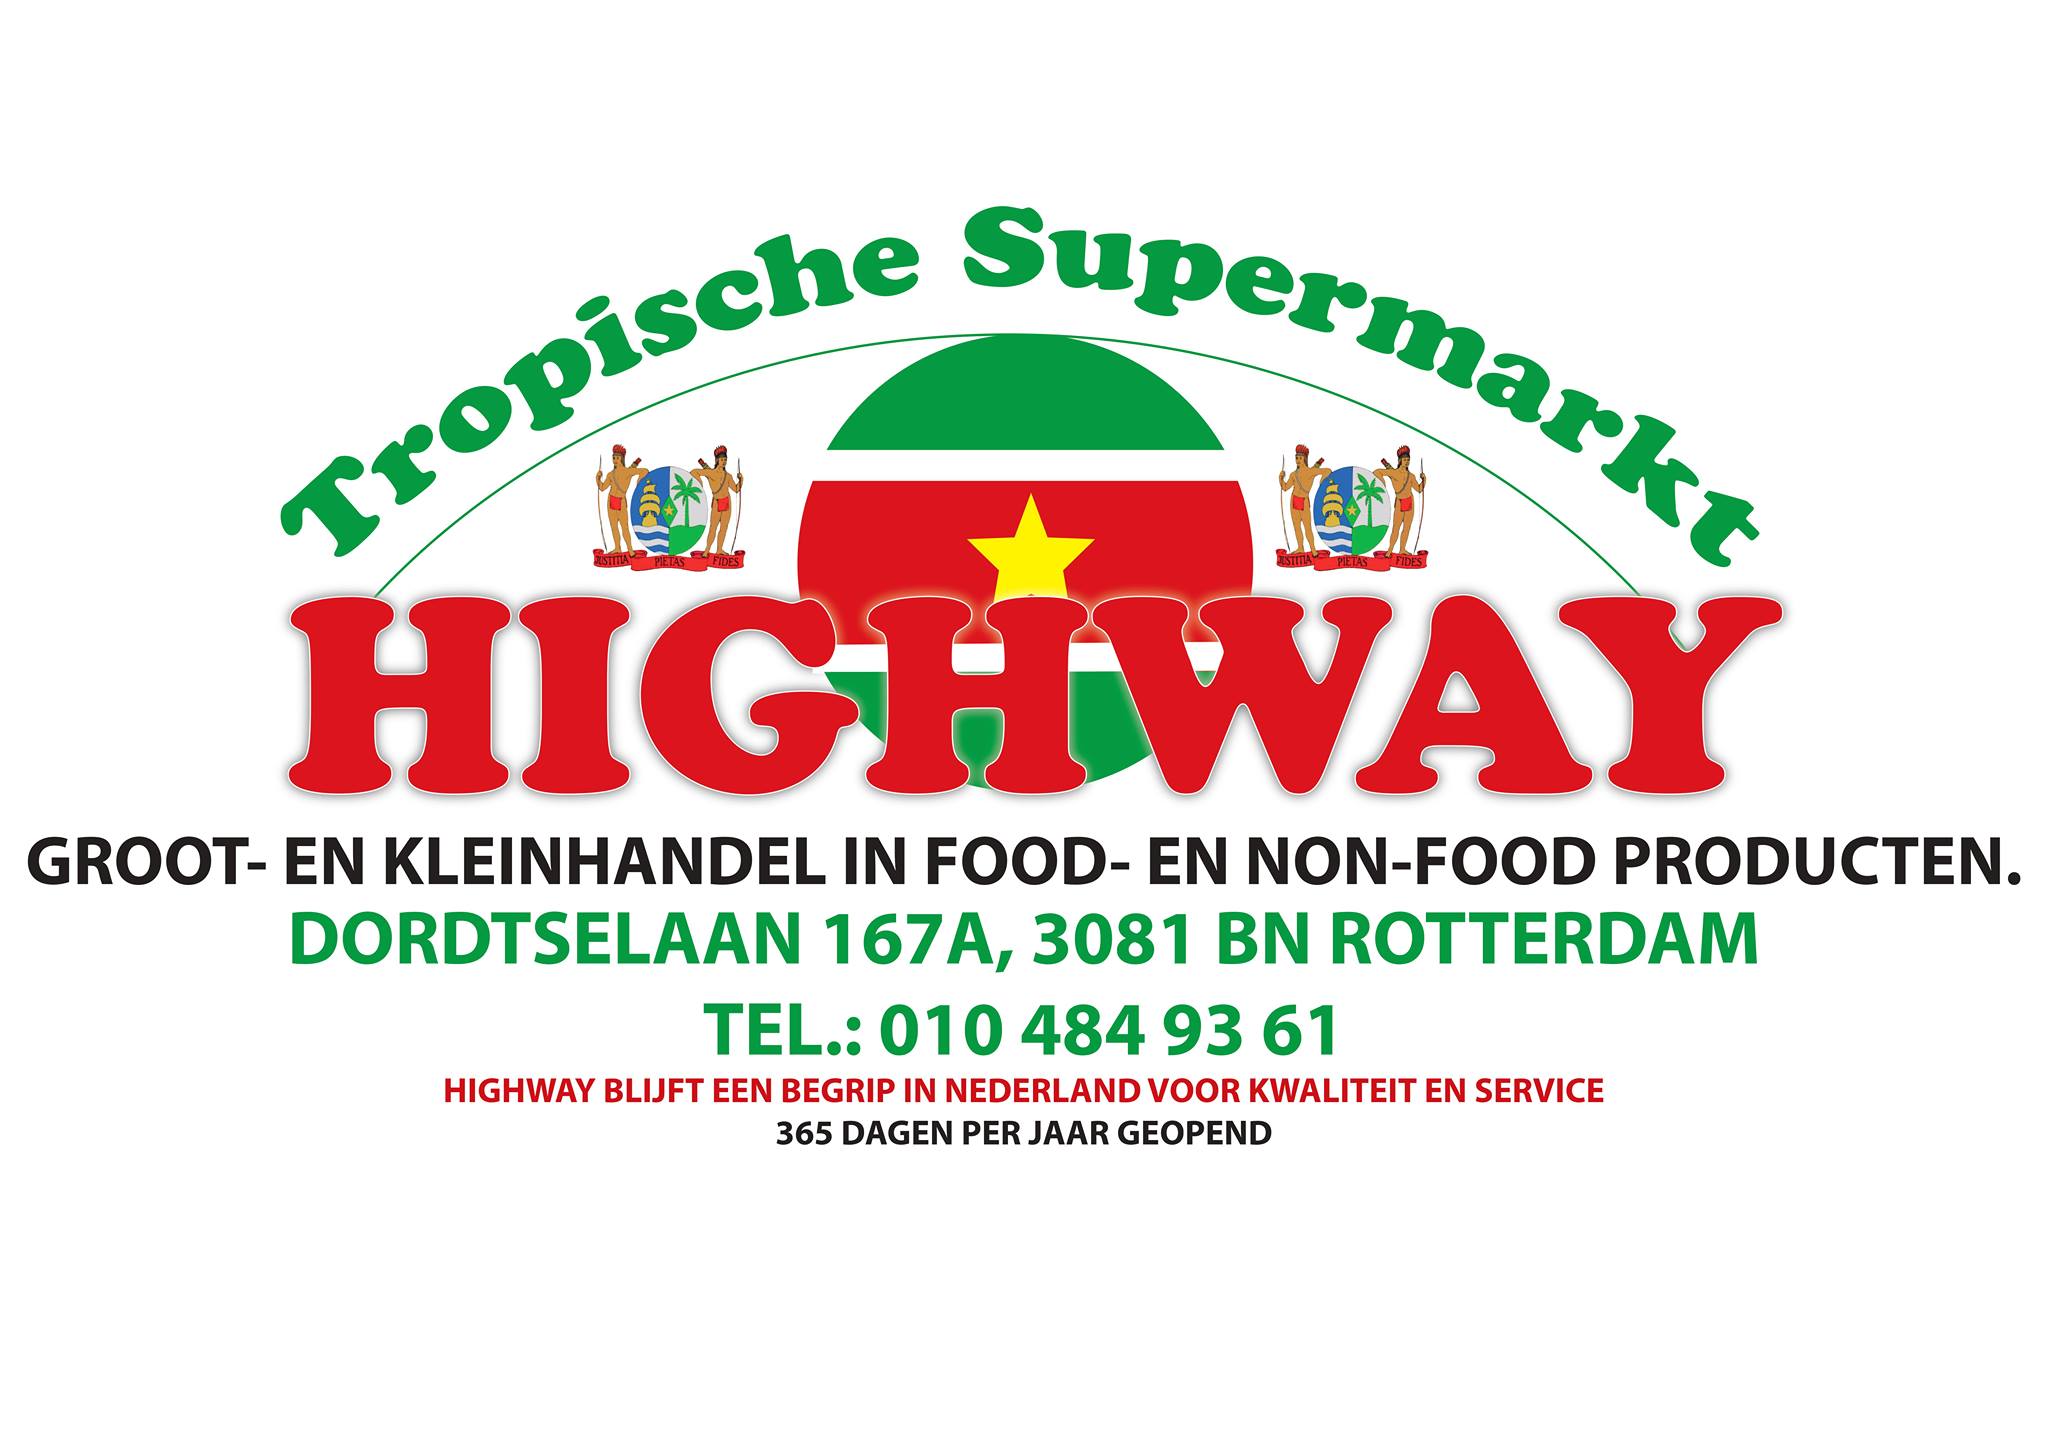 Supermarkt Highway